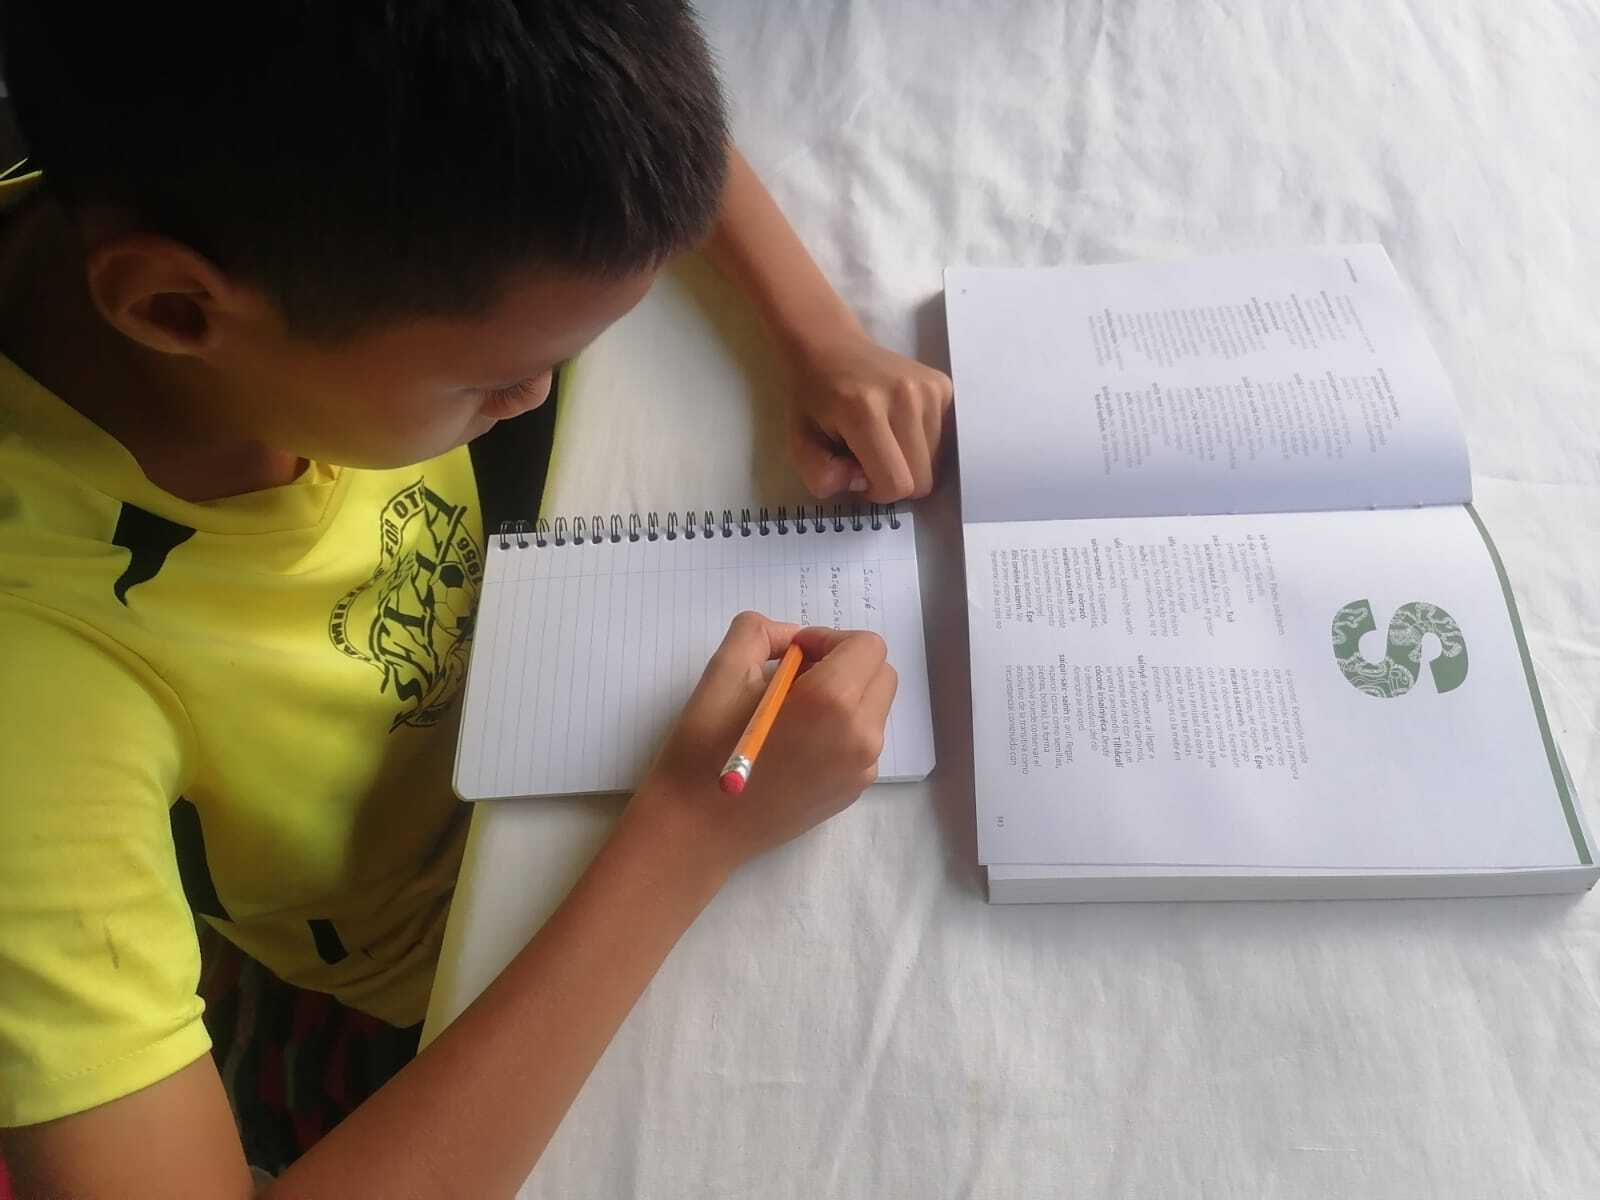 Un niño consulta el diccionario malecu sobre una mesa y toma apuntes de él.